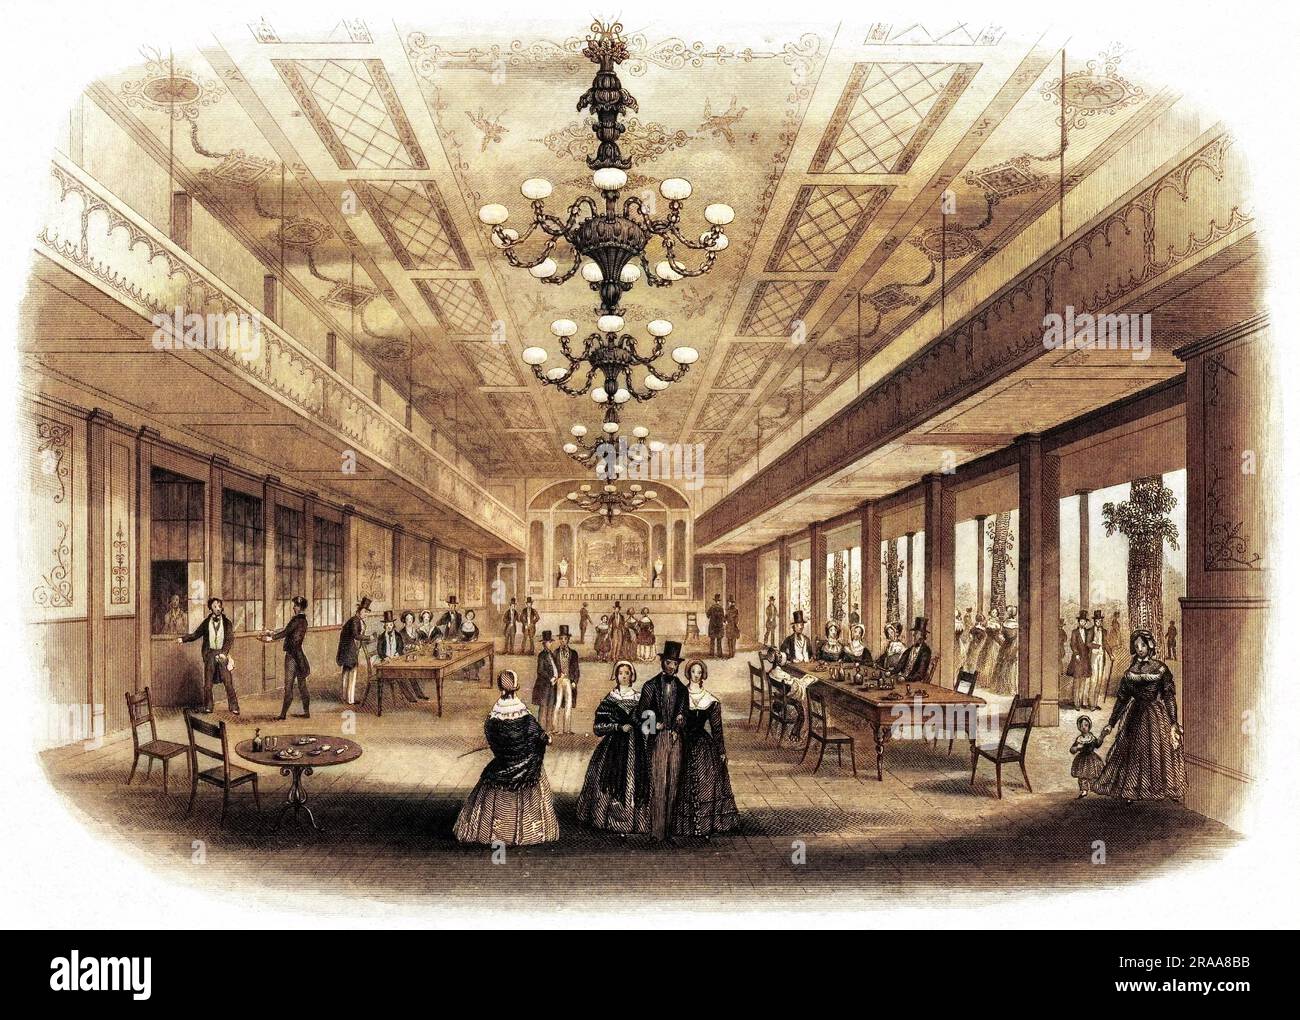 Das Innere des Bankettsaals, das oft von Verbänden und Gesellschaften für ihre Feierlichkeiten genutzt wird. Datum: Ca. 1840 Stockfoto